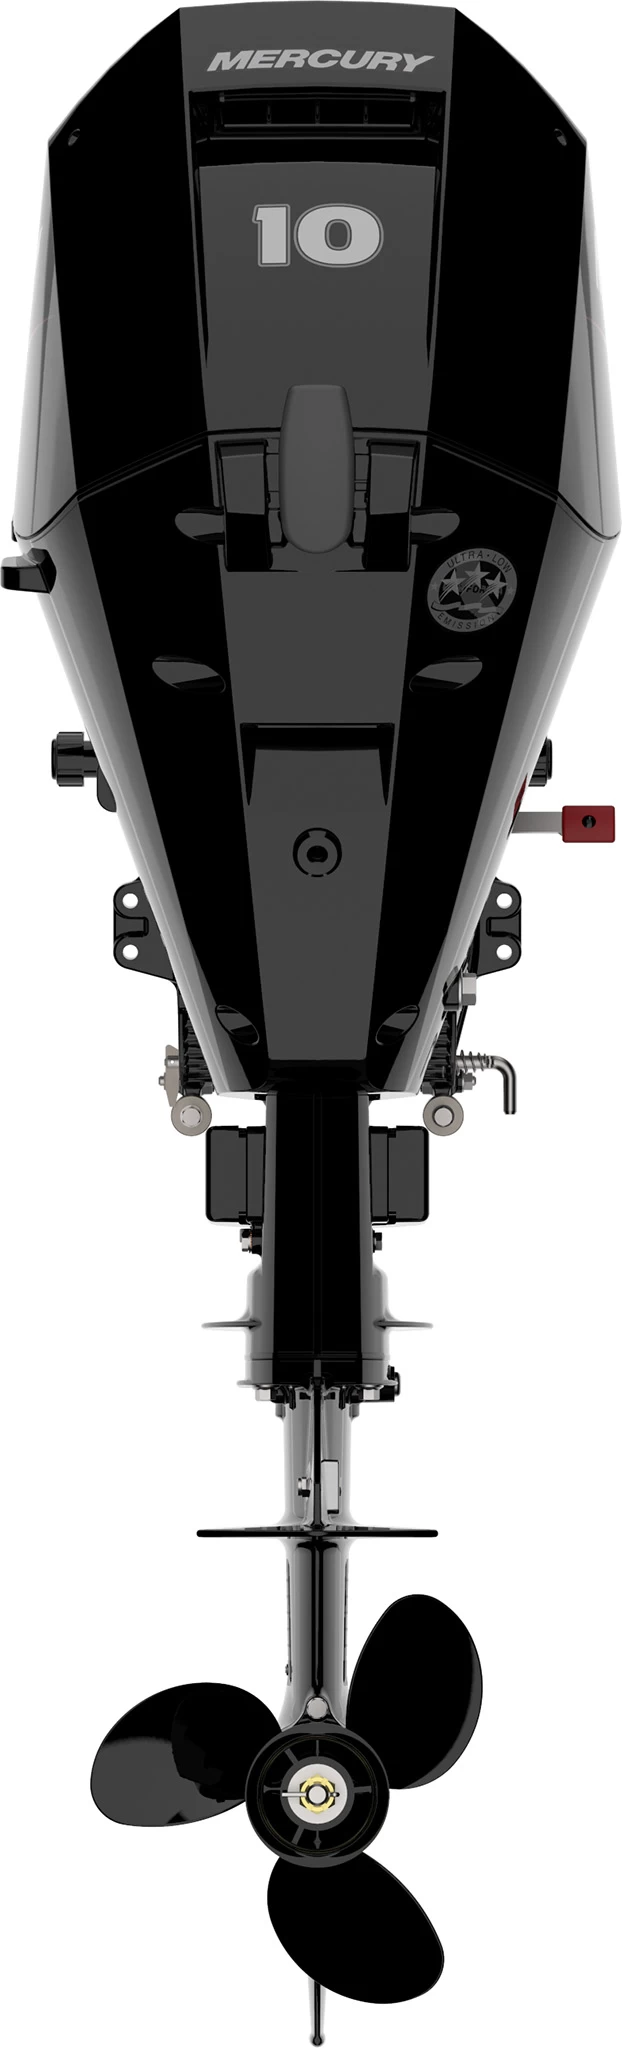 Четырехтактный лодочный мотор MERCURY F10 EL - 2